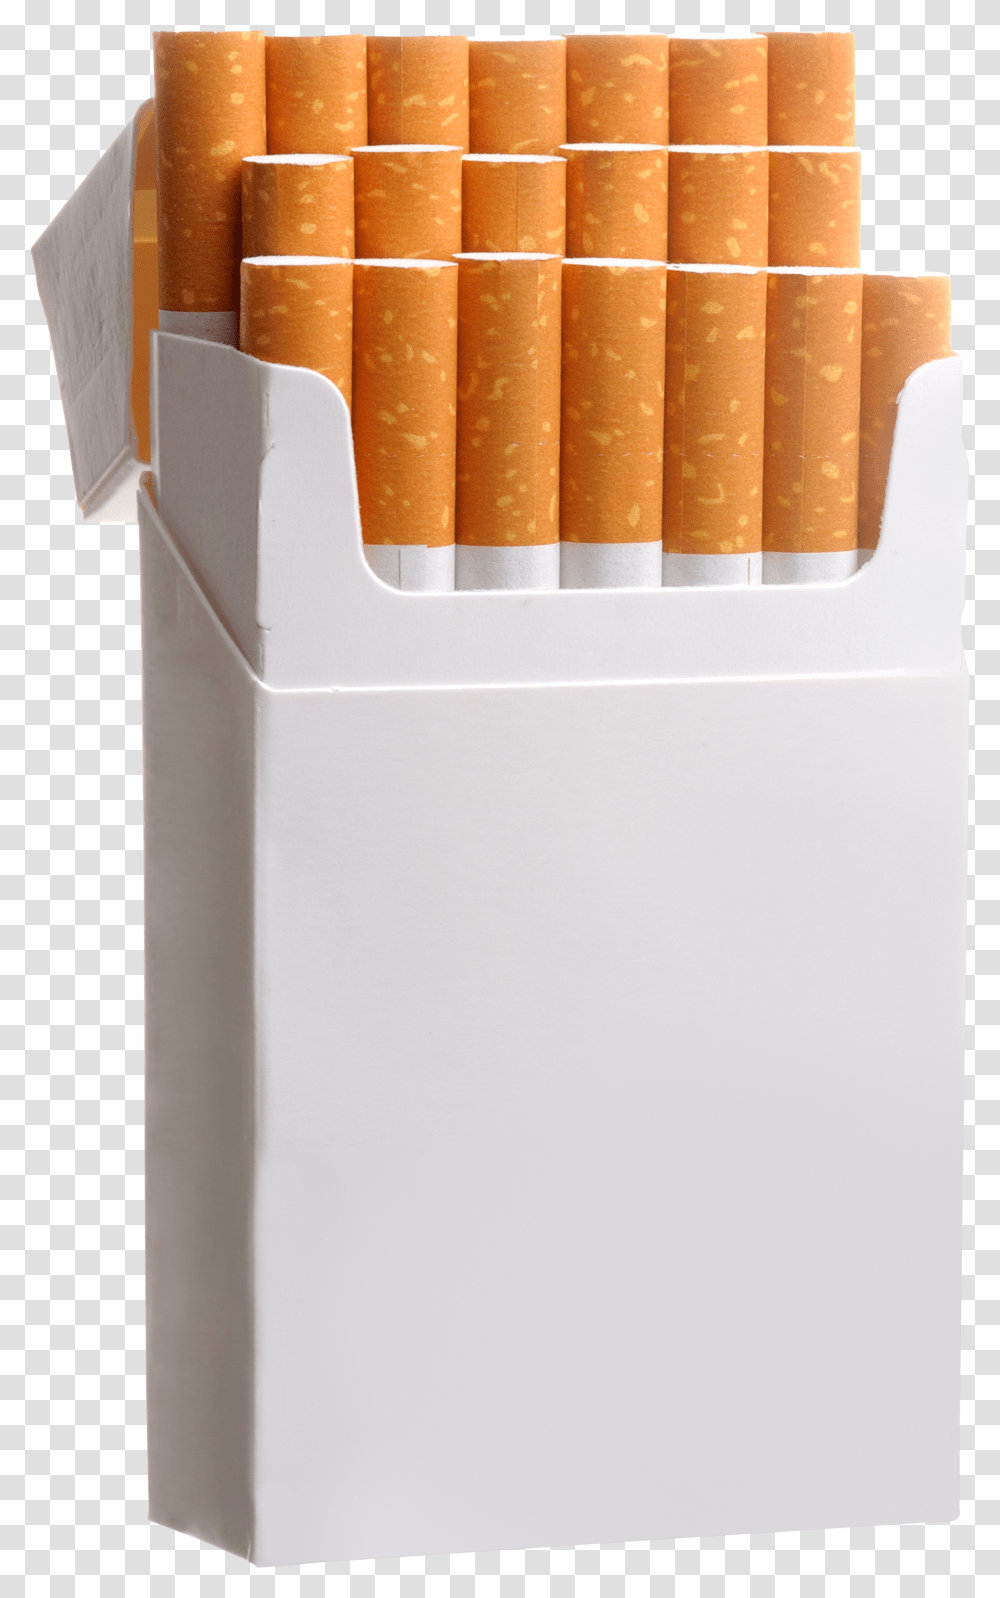 Cigarette Pack Image Cigarette Pack Transparent Png